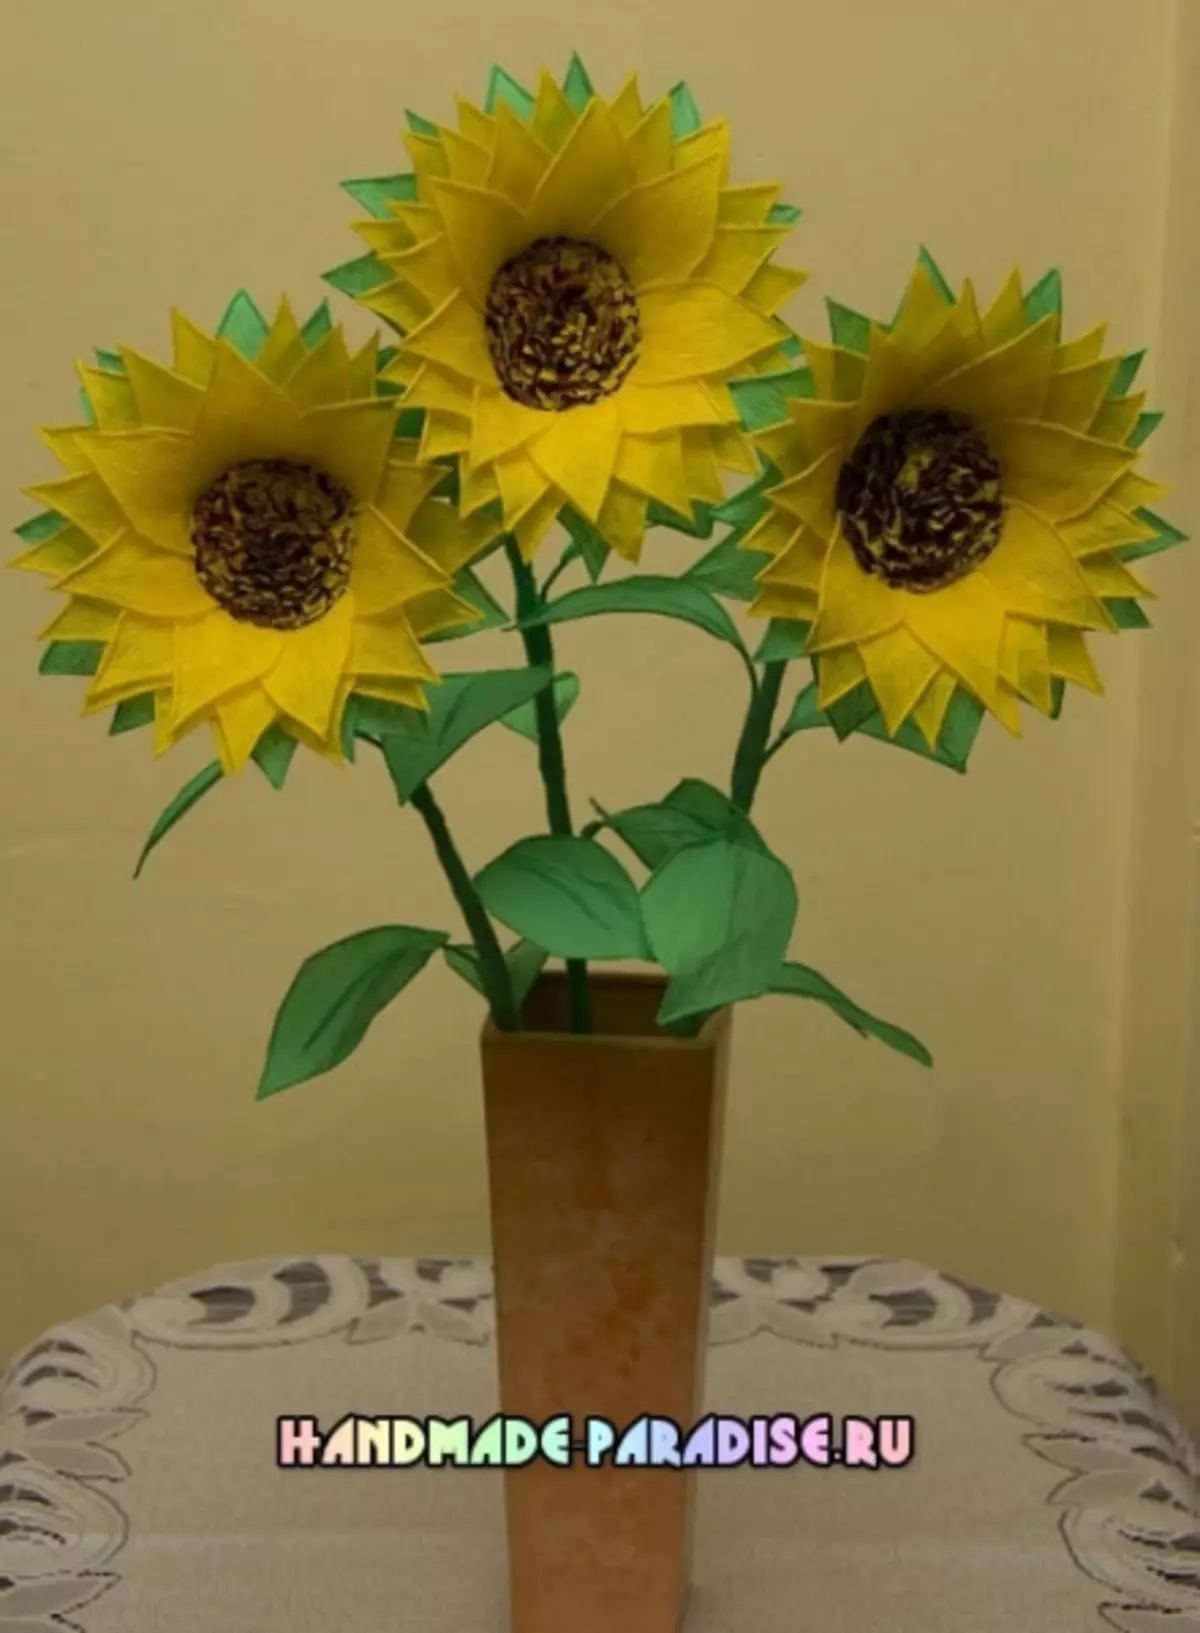 Sunflowers mai le pepa. Matua Vasega